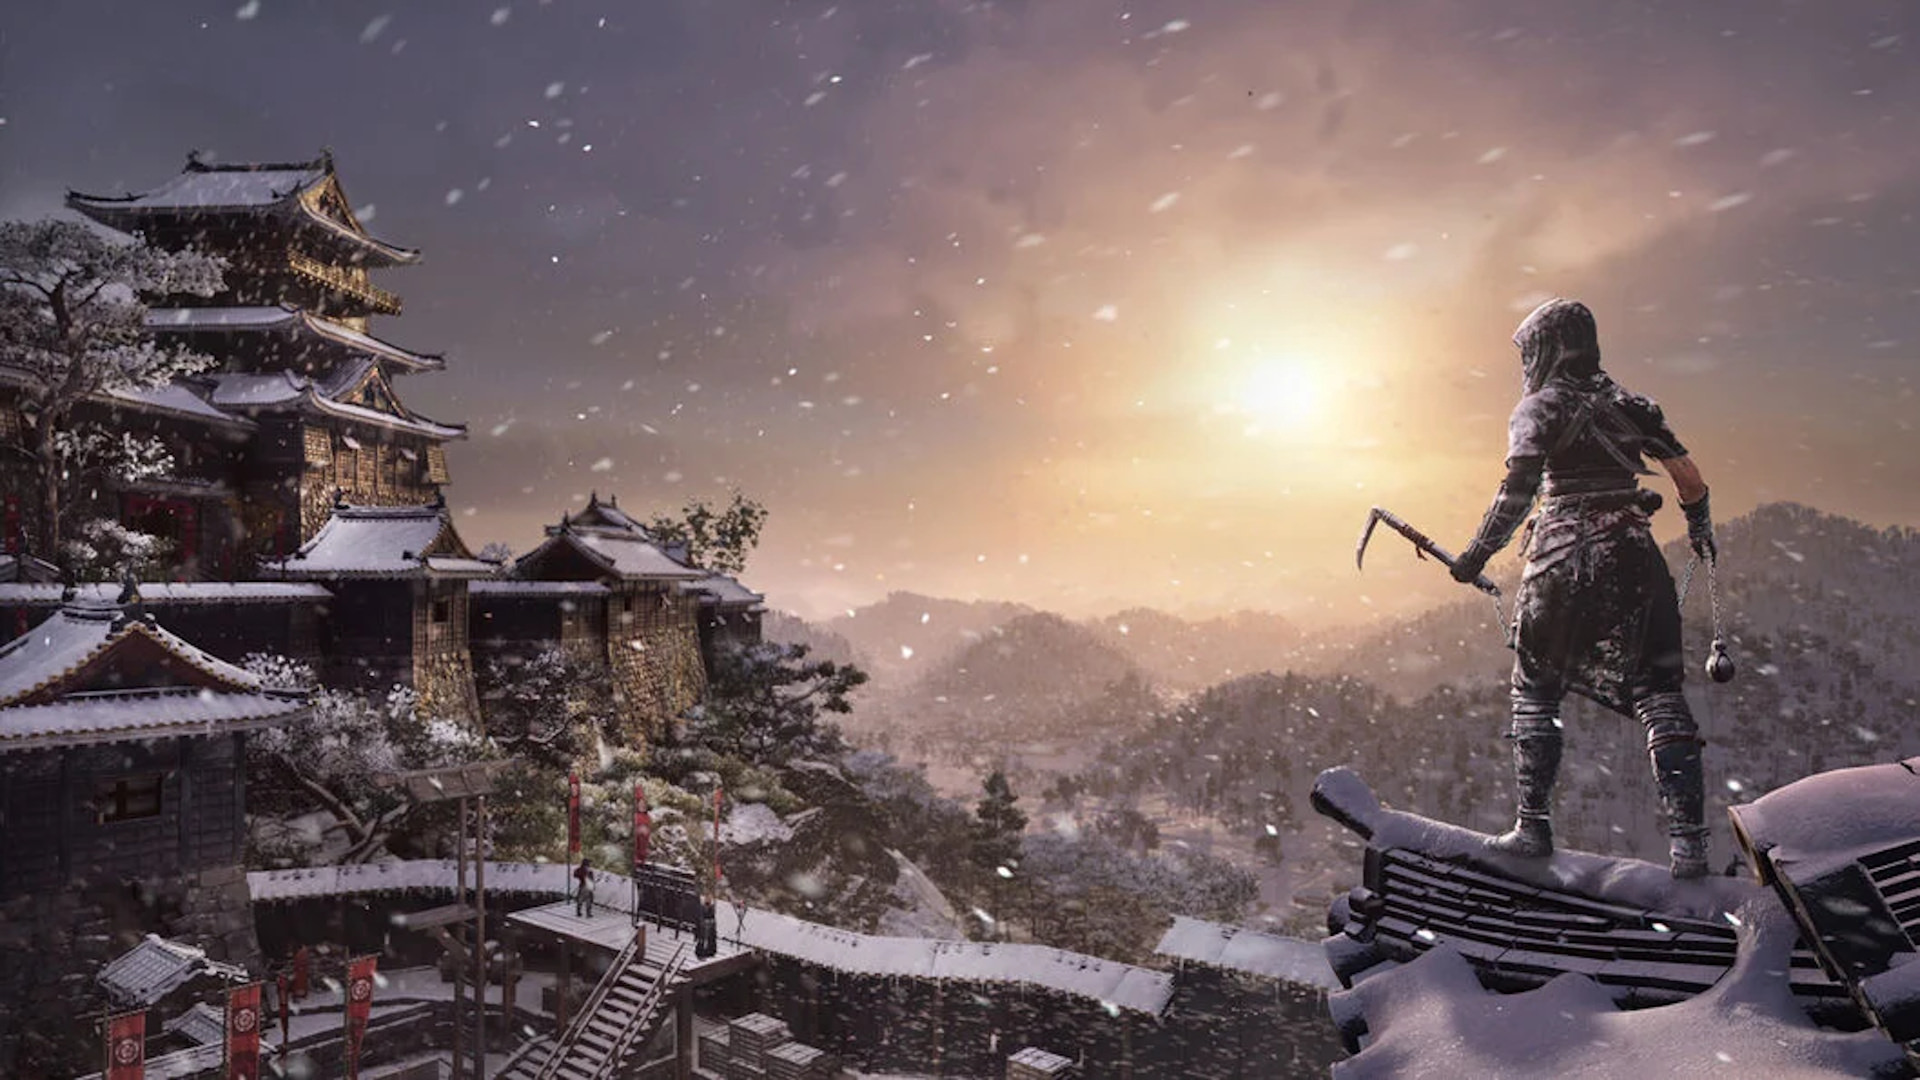 نئویی در حال مشاهده منظره یک قلعه در فصل زمستان Assassin’s Creed Shadows